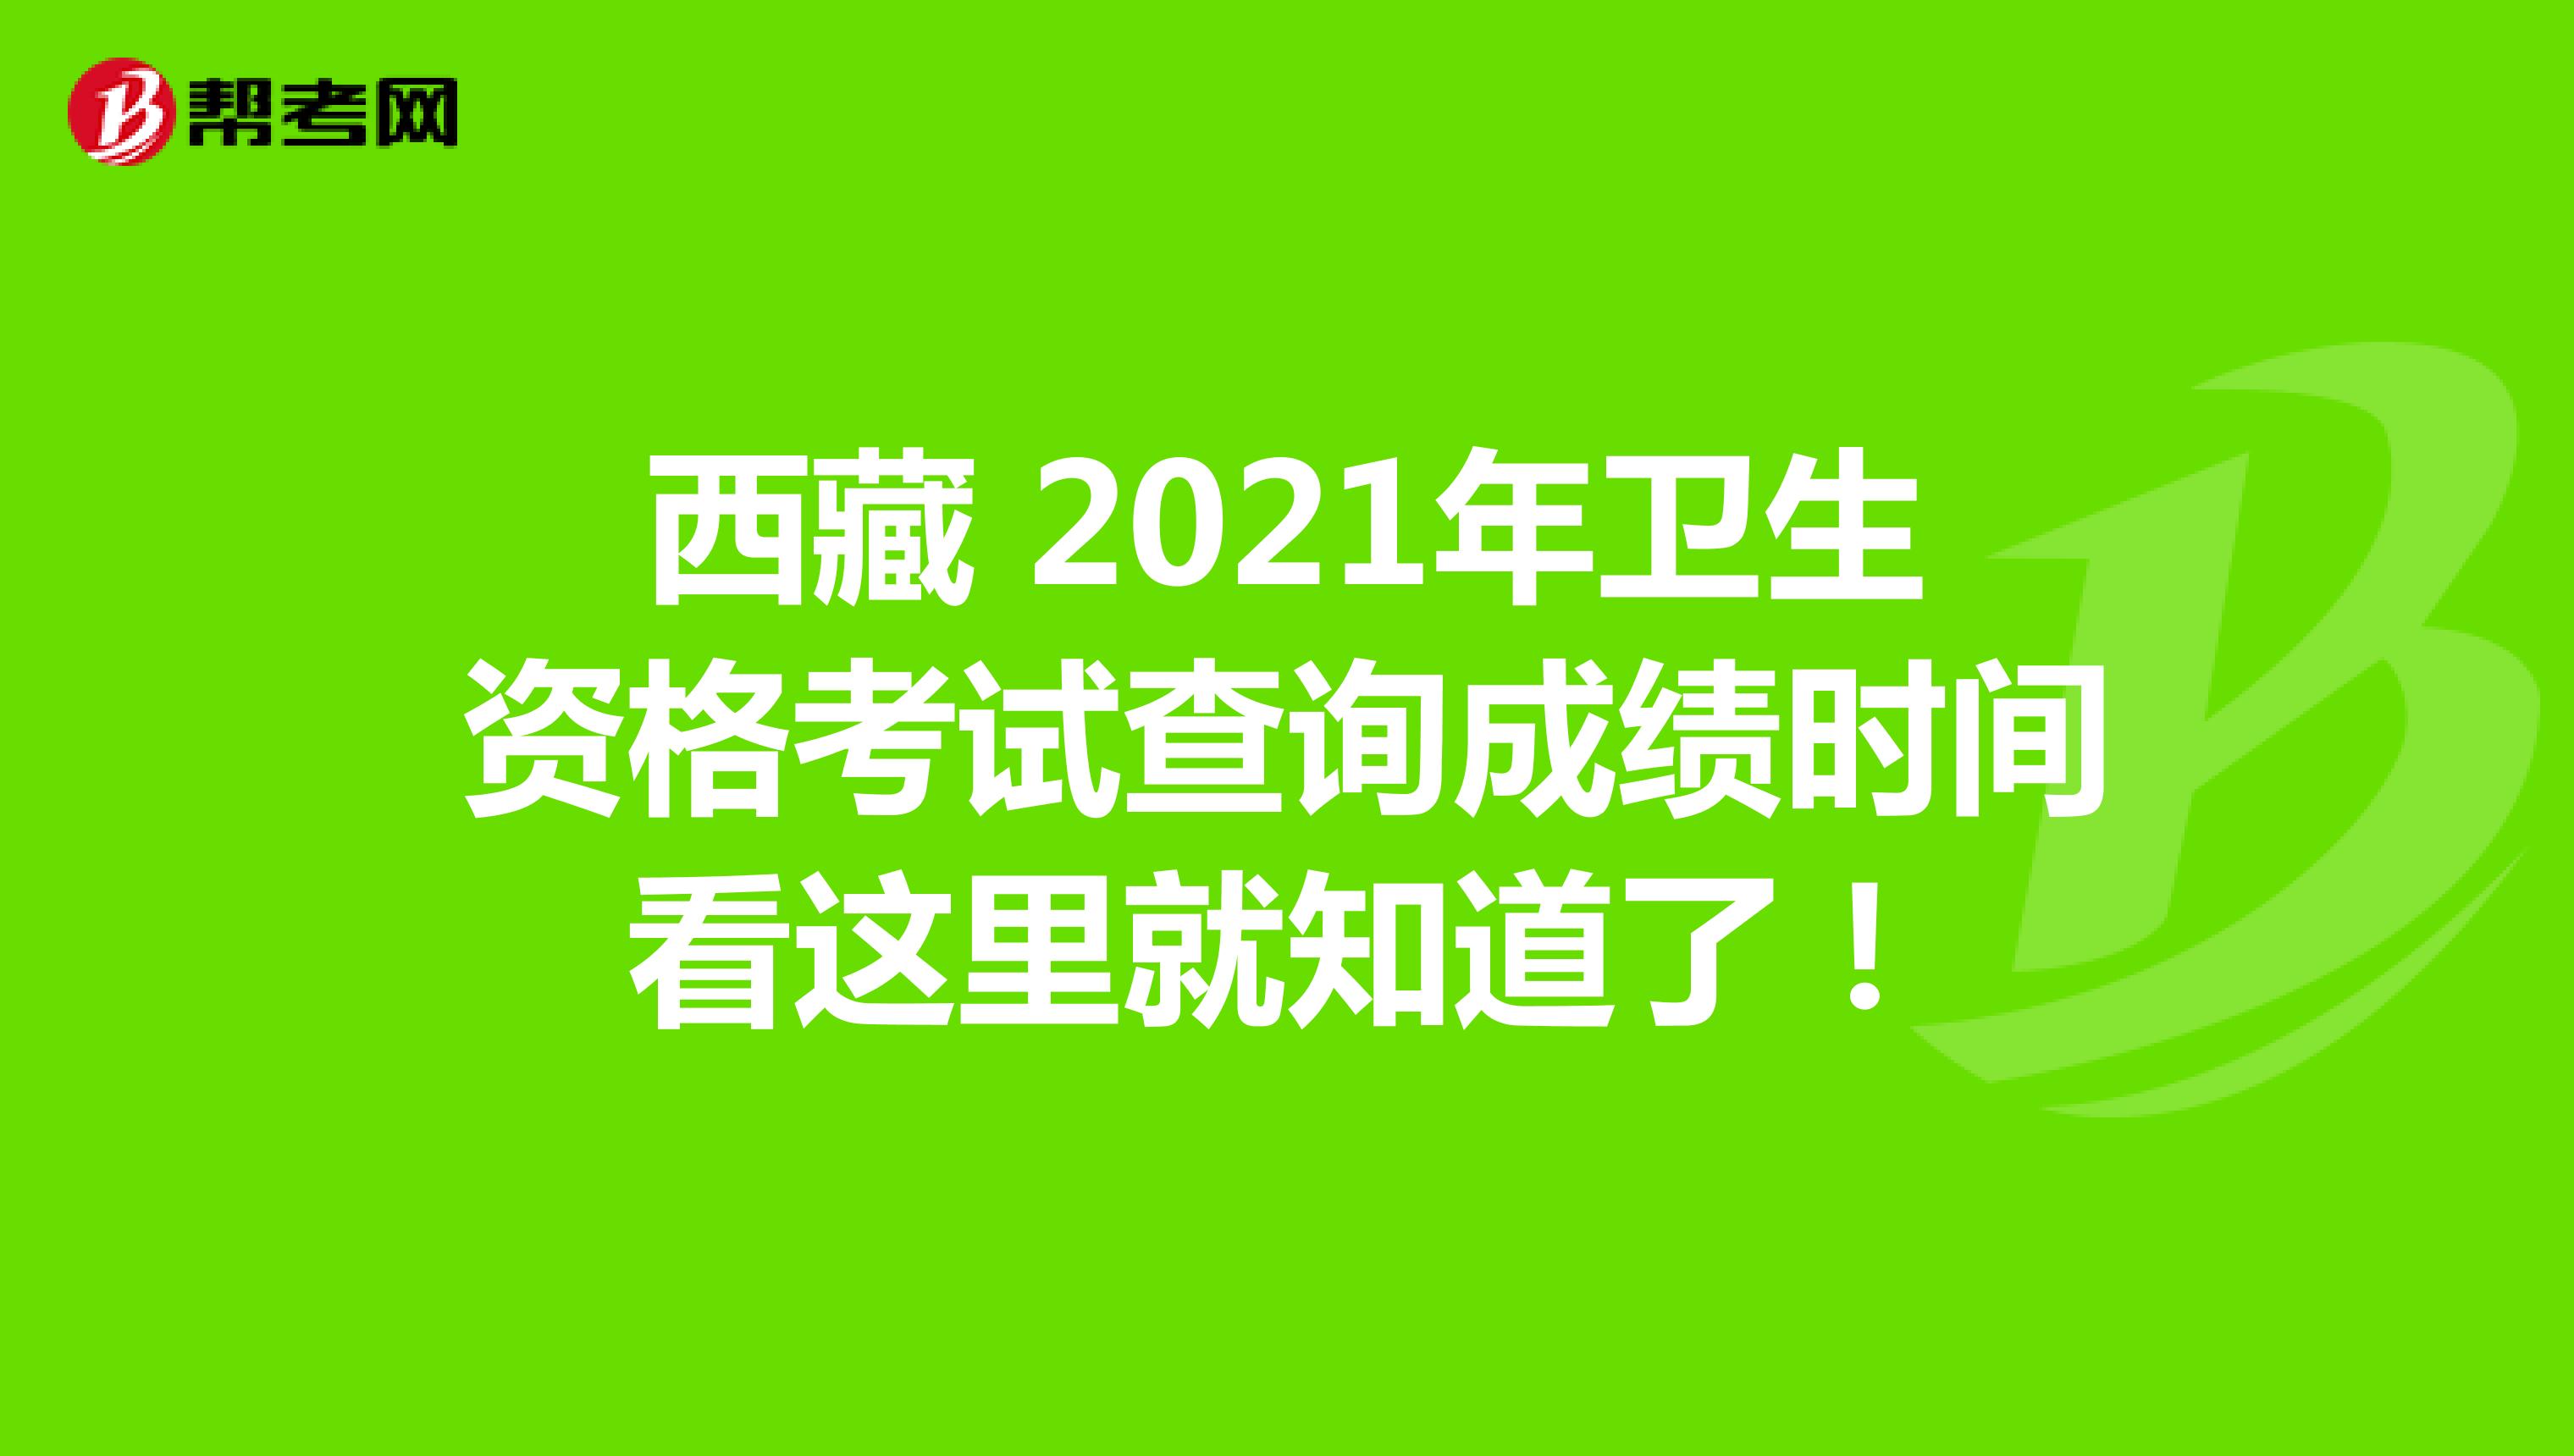 西藏 2021年卫生资格考试查询成绩时间看这里就知道了！